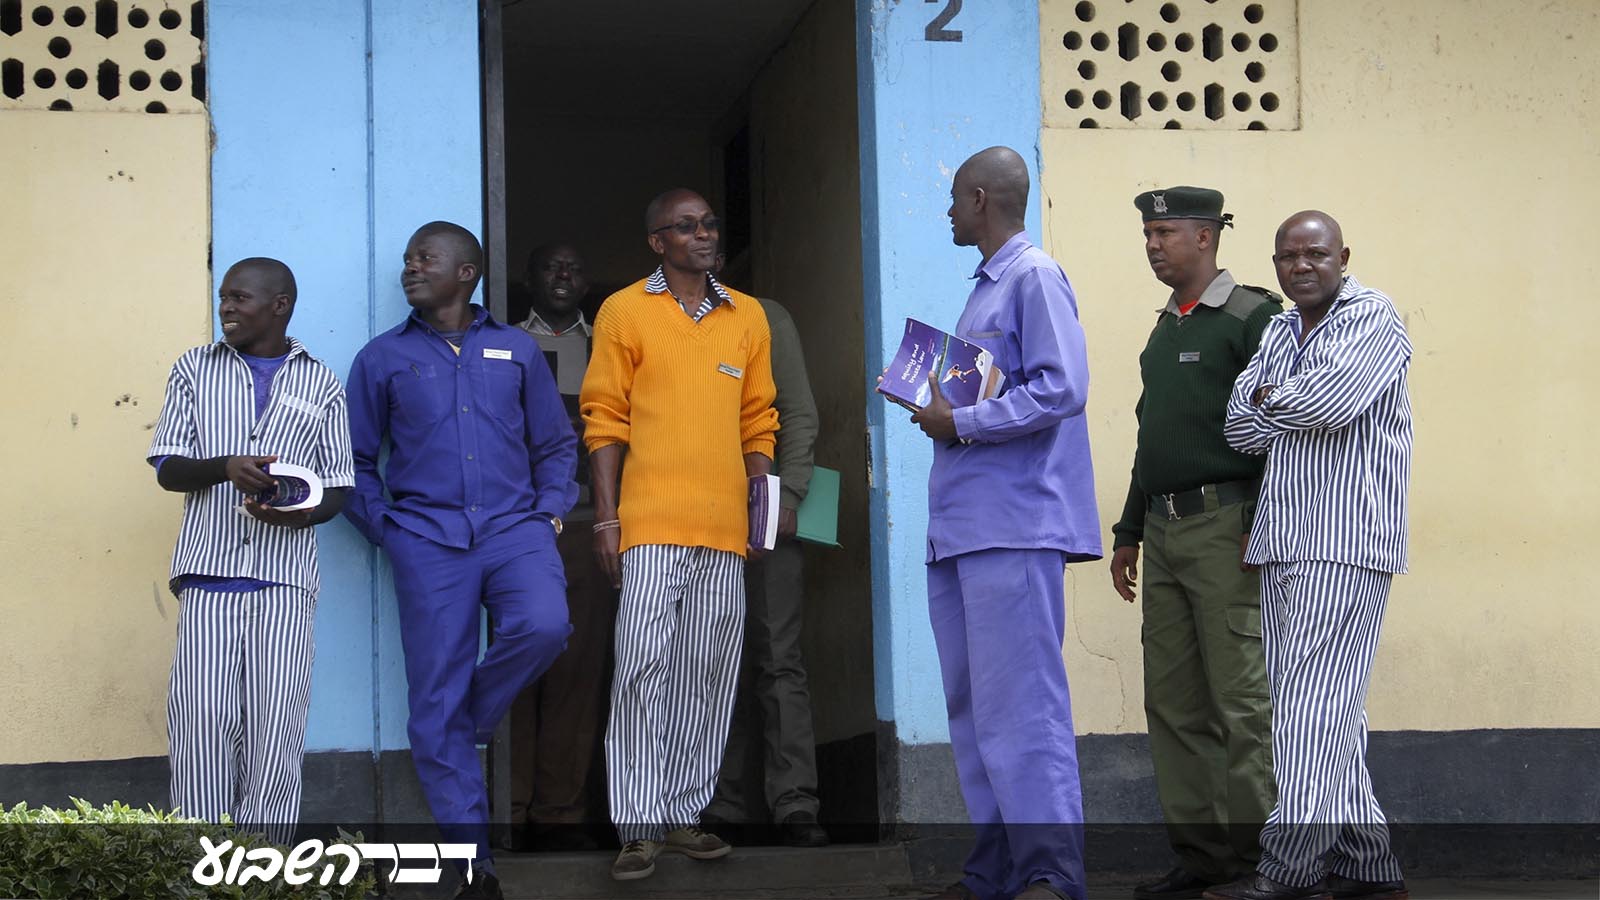 אסירים בכלא בקניה בתכנית לימוד משפטים (צילום: AP Photo/Josphat Kasire).